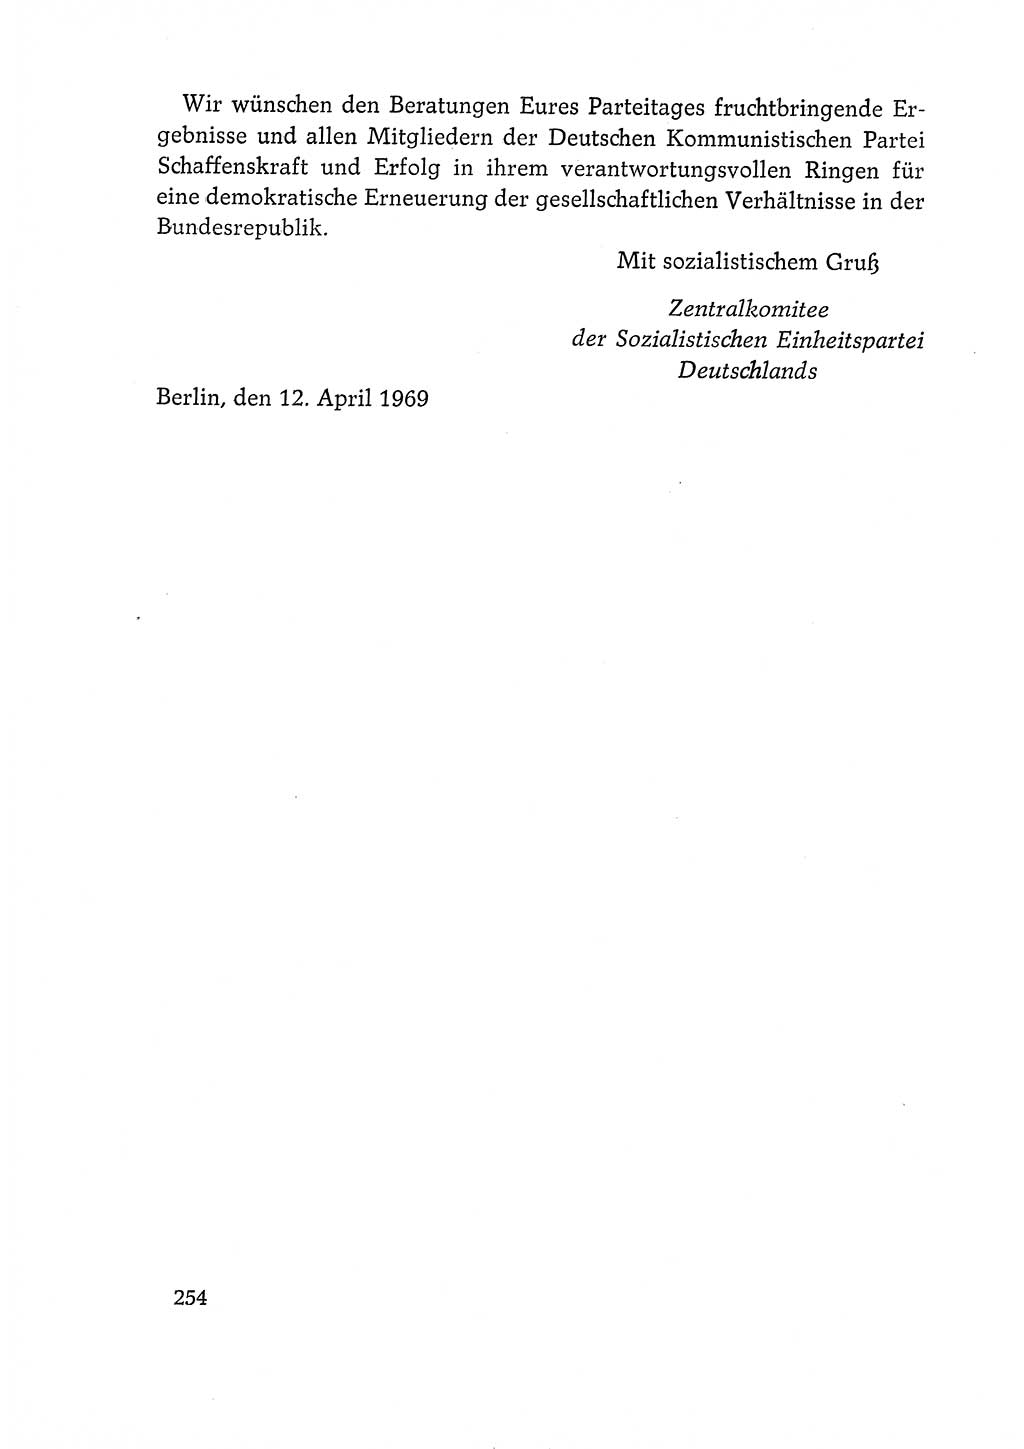 Dokumente der Sozialistischen Einheitspartei Deutschlands (SED) [Deutsche Demokratische Republik (DDR)] 1968-1969, Seite 254 (Dok. SED DDR 1968-1969, S. 254)